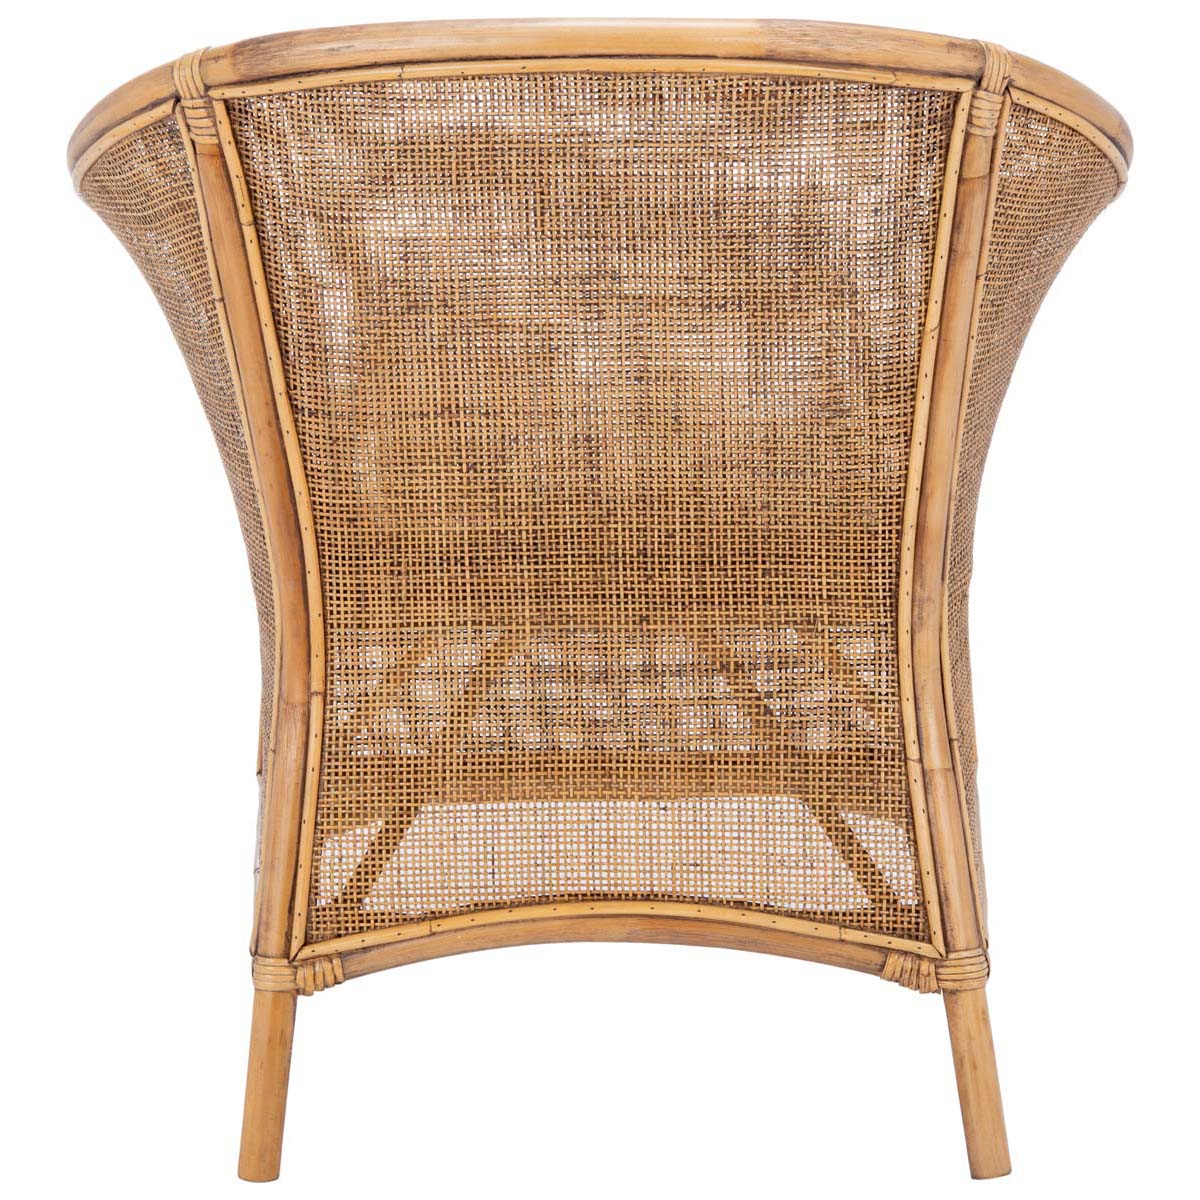 Safavieh Jessica Rattan Accent Chair W/ Cushion , ACH6519 - Honey Brown Wash/White